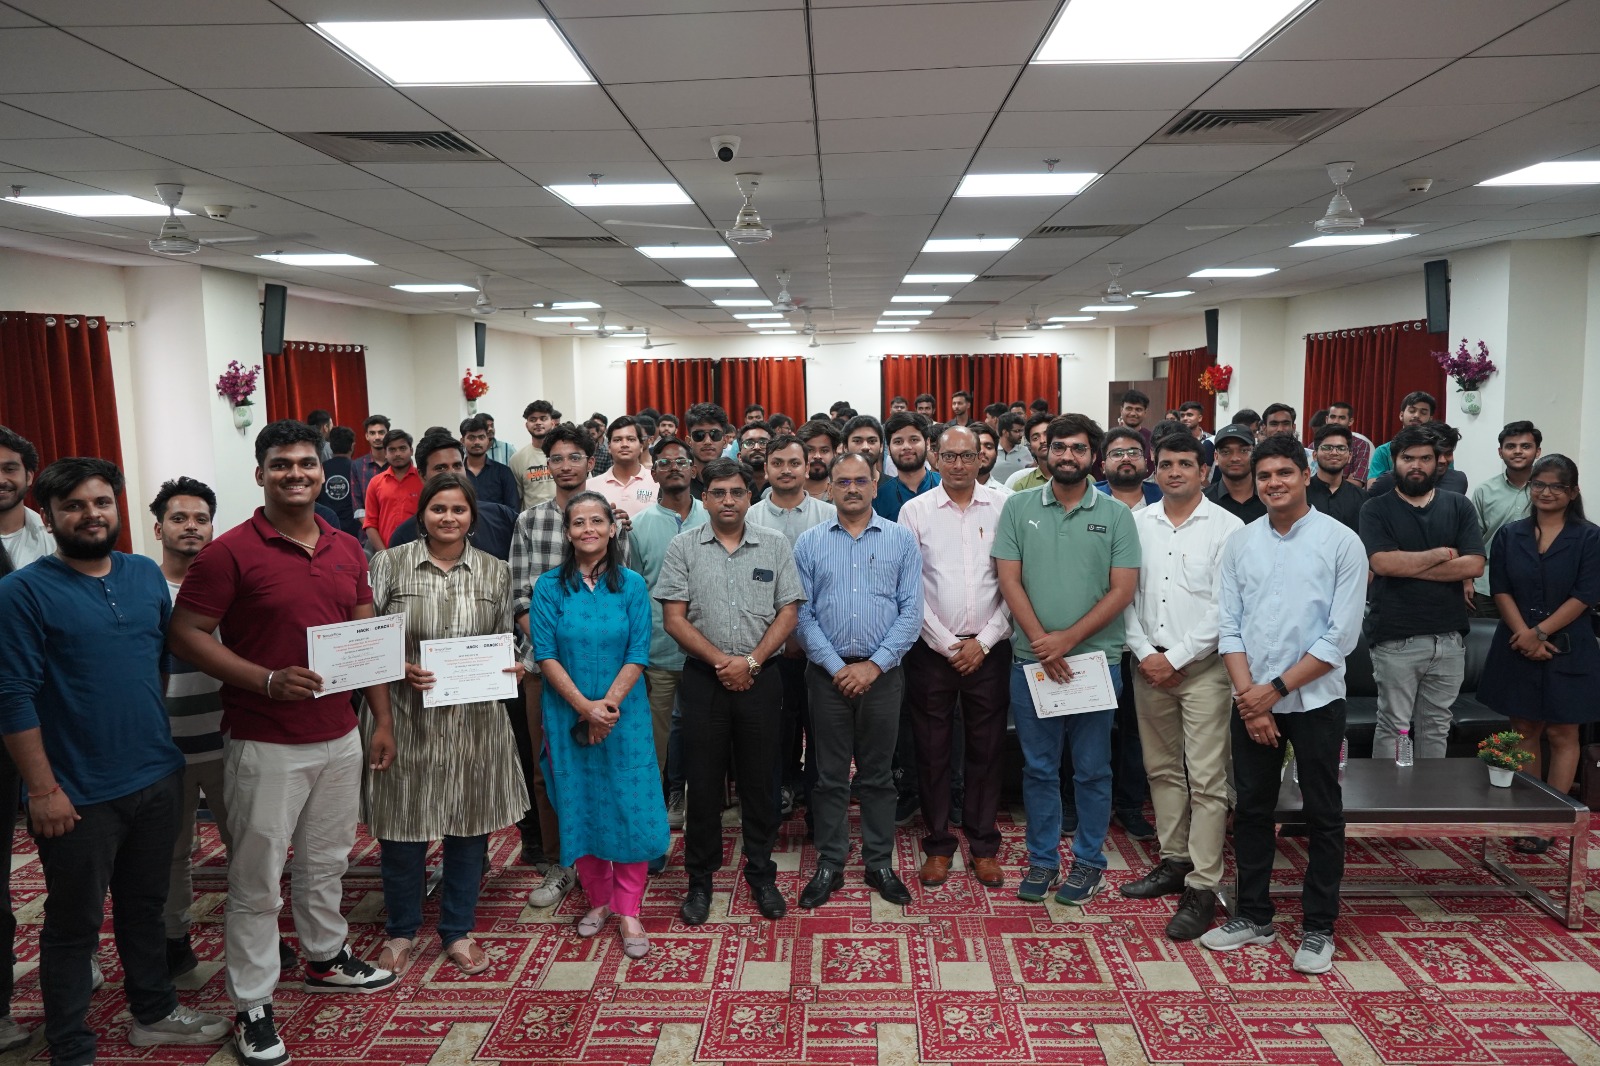 उत्तर प्रदेश डेस्क लखनऊ(आर एल पांडेय).डॉ एपीजे अब्दुल कलाम प्राविधिक विश्वविद्यालय के इन्नोवेशन हब एवं गूगल से सहायता प्राप्त टेंसरफ्लो यूजर ग्रुप लखनऊ के तत्वाधान में एक दिवसीय जनरल ए आई, समिट अवध का आयोजन किया गया. माननीय कुलपति प्रोफेसर जेपी पांडे के निर्देशन में आयोजित कार्यक्रम में विशेषज्ञों ने आर्टिफिशियल इंटेलिजेंस नवीन बदलाव के बारे में जानकारी साझा की. नई ए आई का स्टार्टअप और तकनीकी वर्ग , को हो रहे फायदे के बारे में बताया.